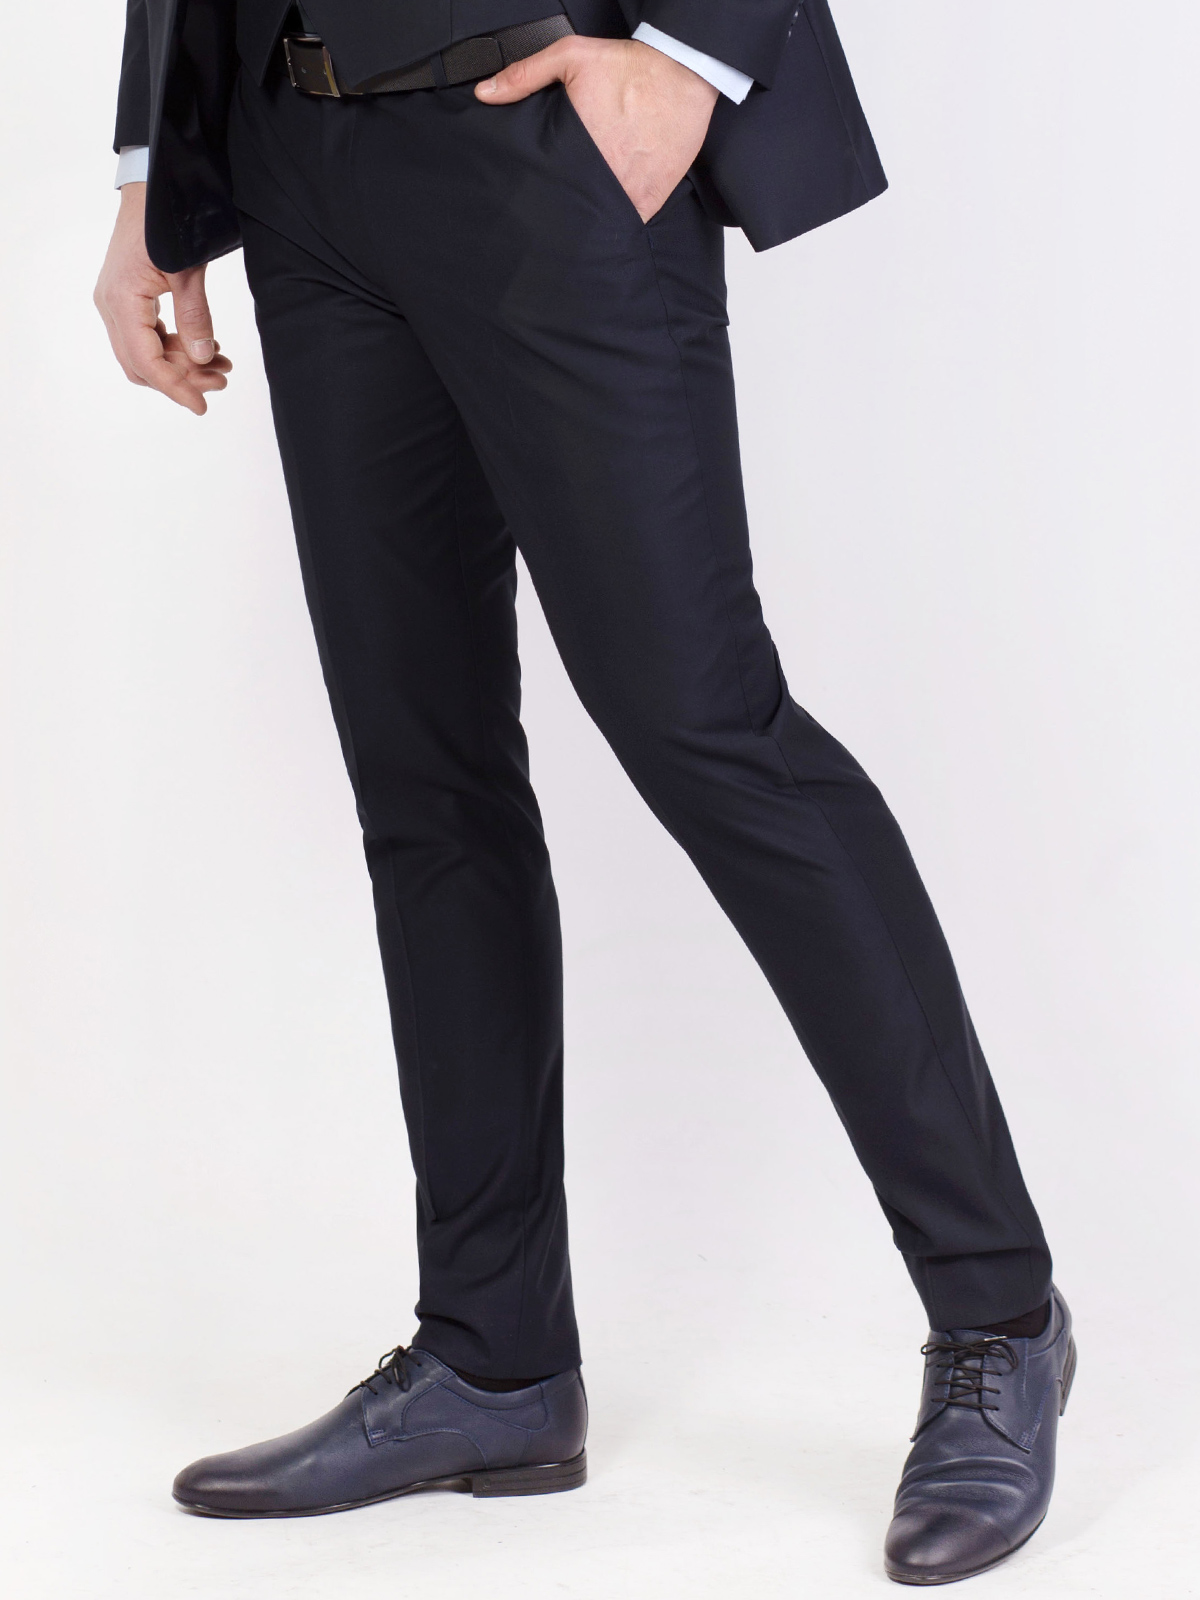 Classic black pants - 63303 € 51.74 img3